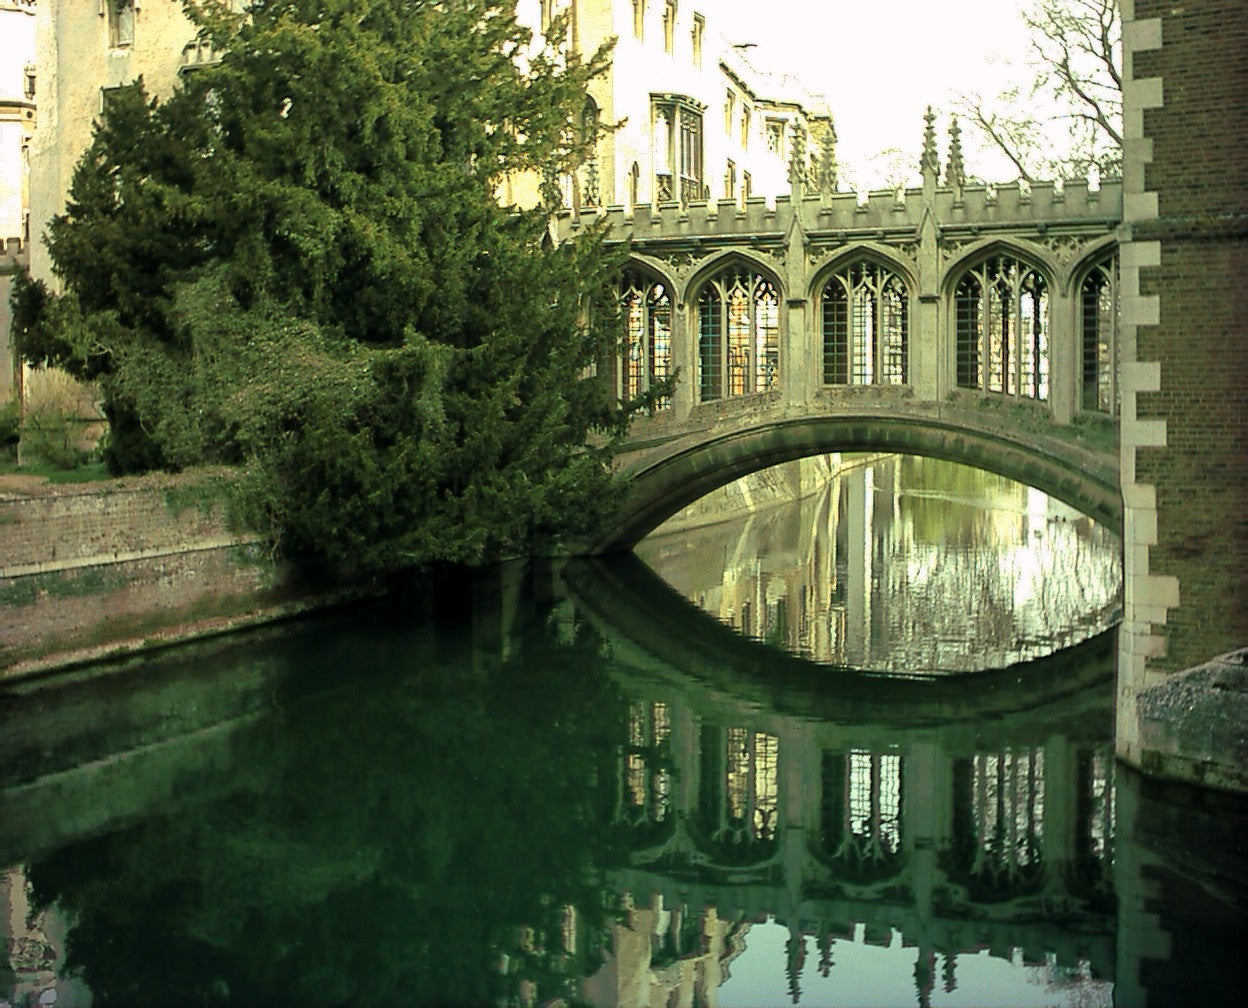 Cambridge's famous Bridge of Sighs